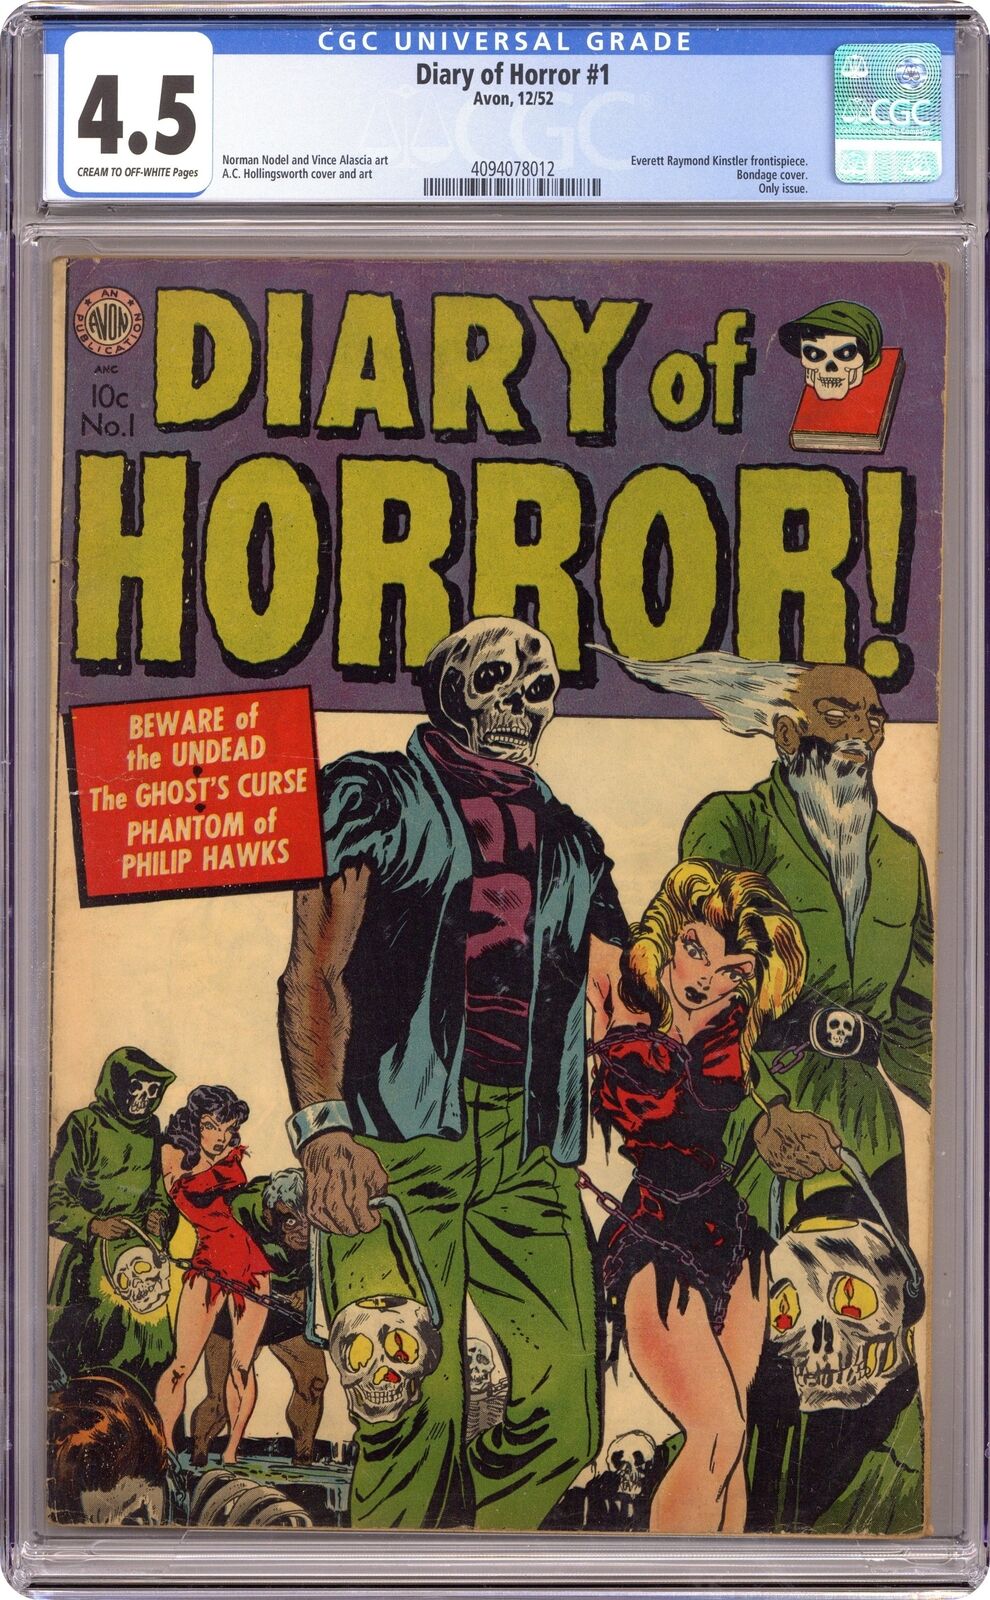 Diary of Horror #1 CGC 4.5 1952 4094078012